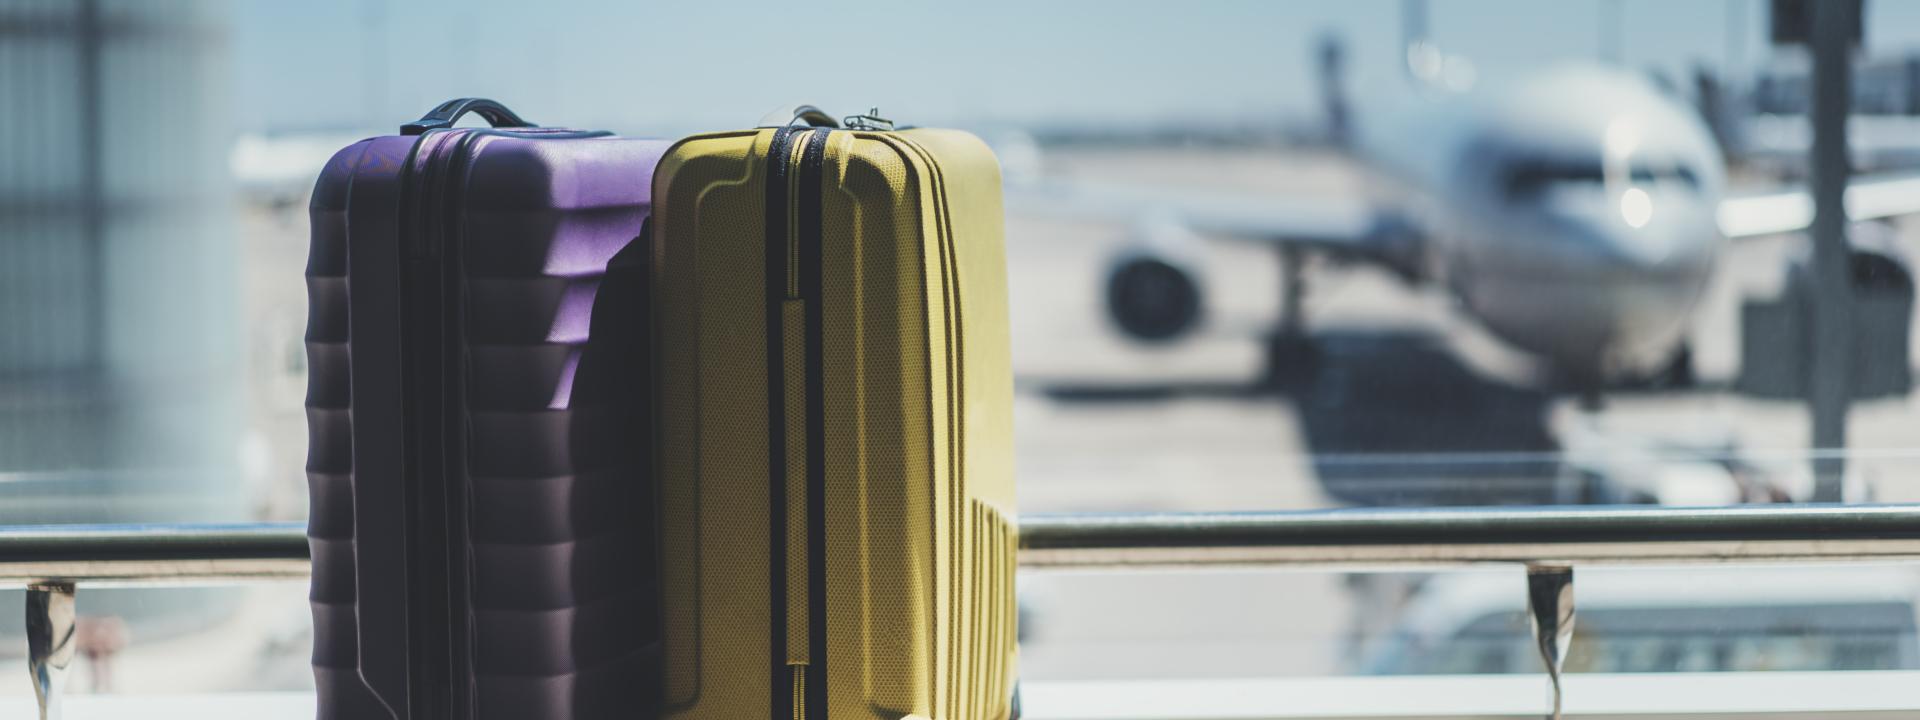 2 maletas morada y amarilla delante de una cristalera donde se visualizan aviones en la pista